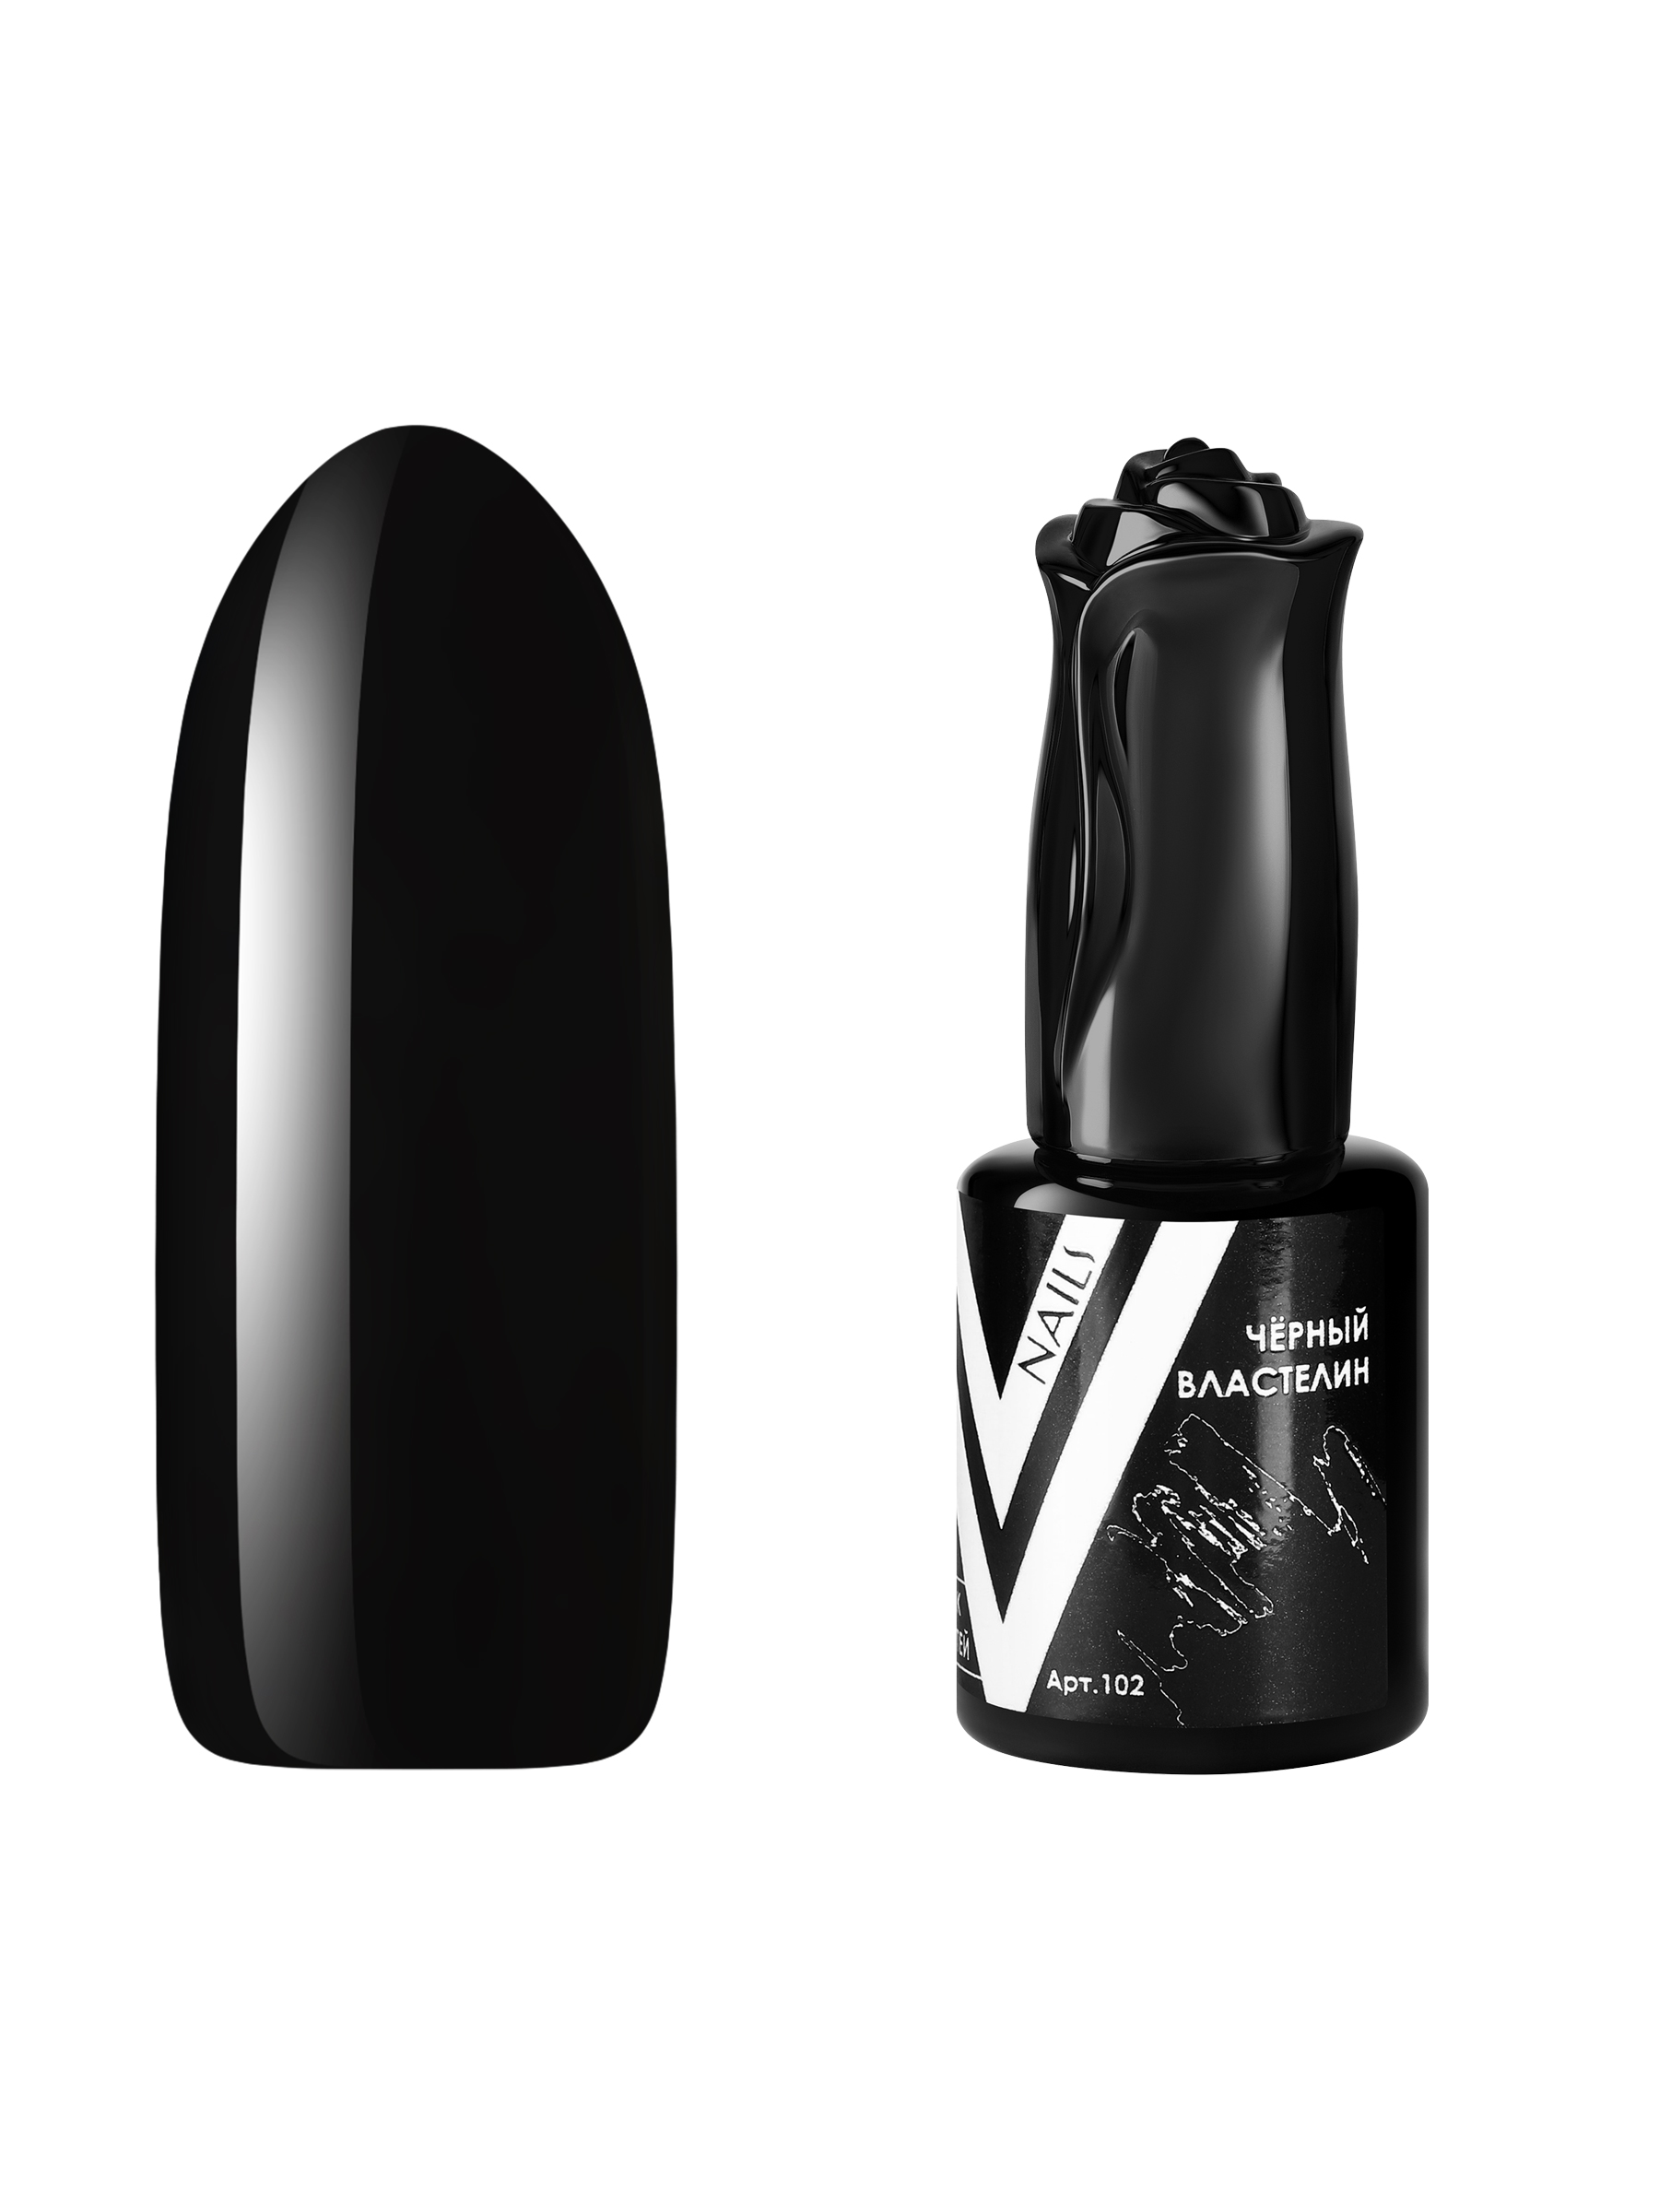 Гель-лак для ногтей Vogue Nails плотный самовыравнивающийся, темный, черный, 10 мл церковная свеча из воска 120 темный натуральный 1кг